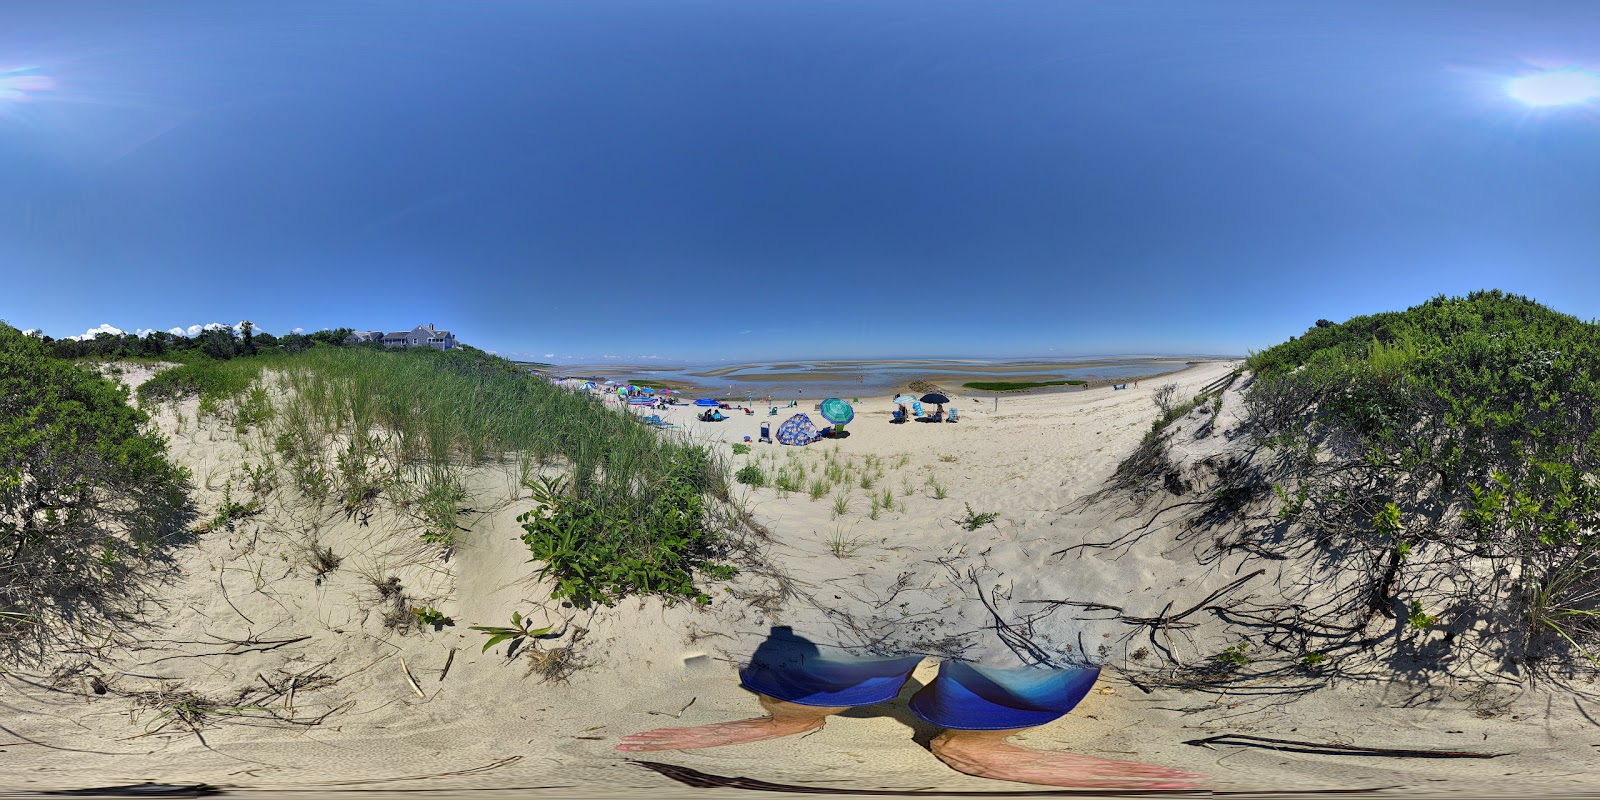 Mant's Landing beach的照片 具有非常干净级别的清洁度